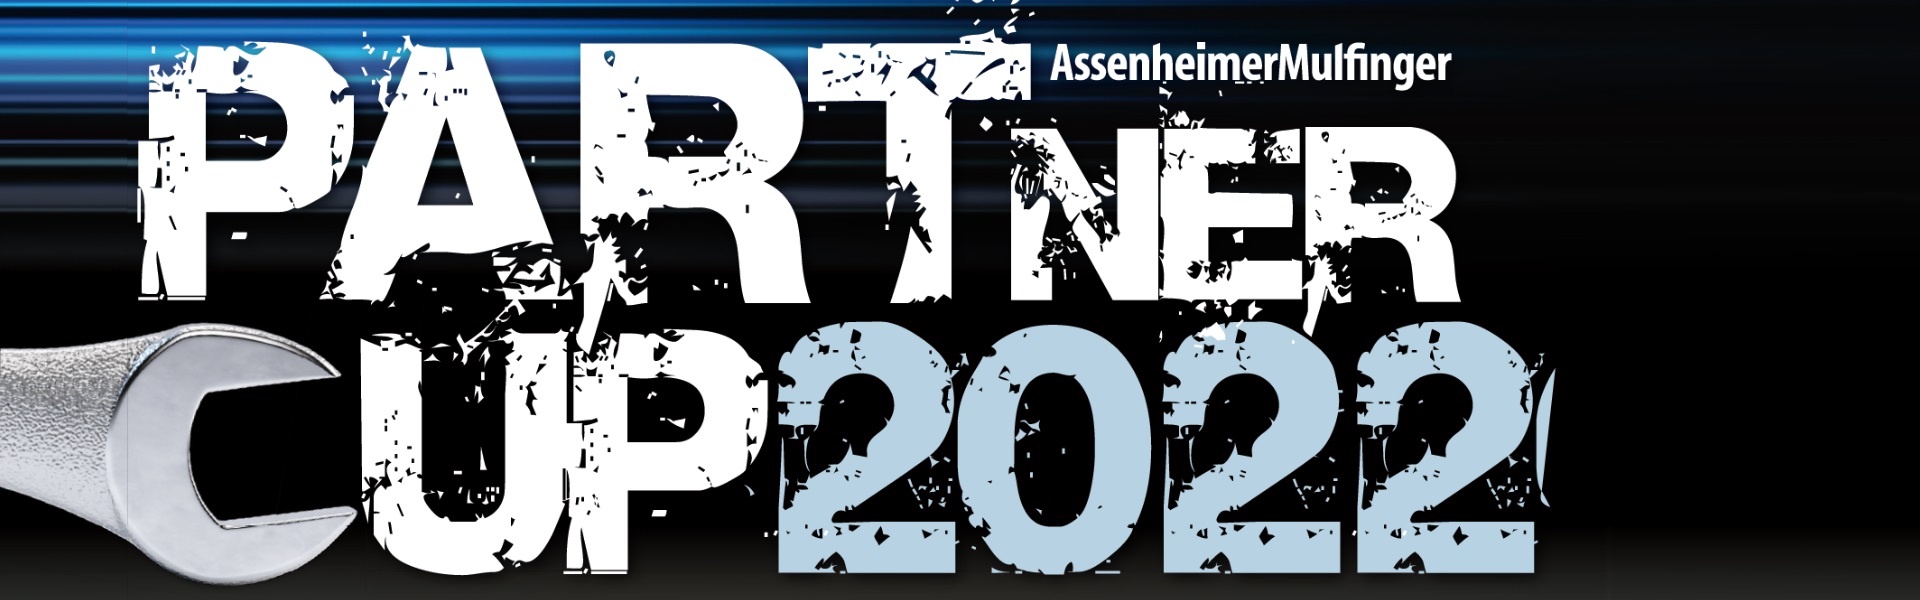 AssenheimerMulfinger PARTnerCup 2022